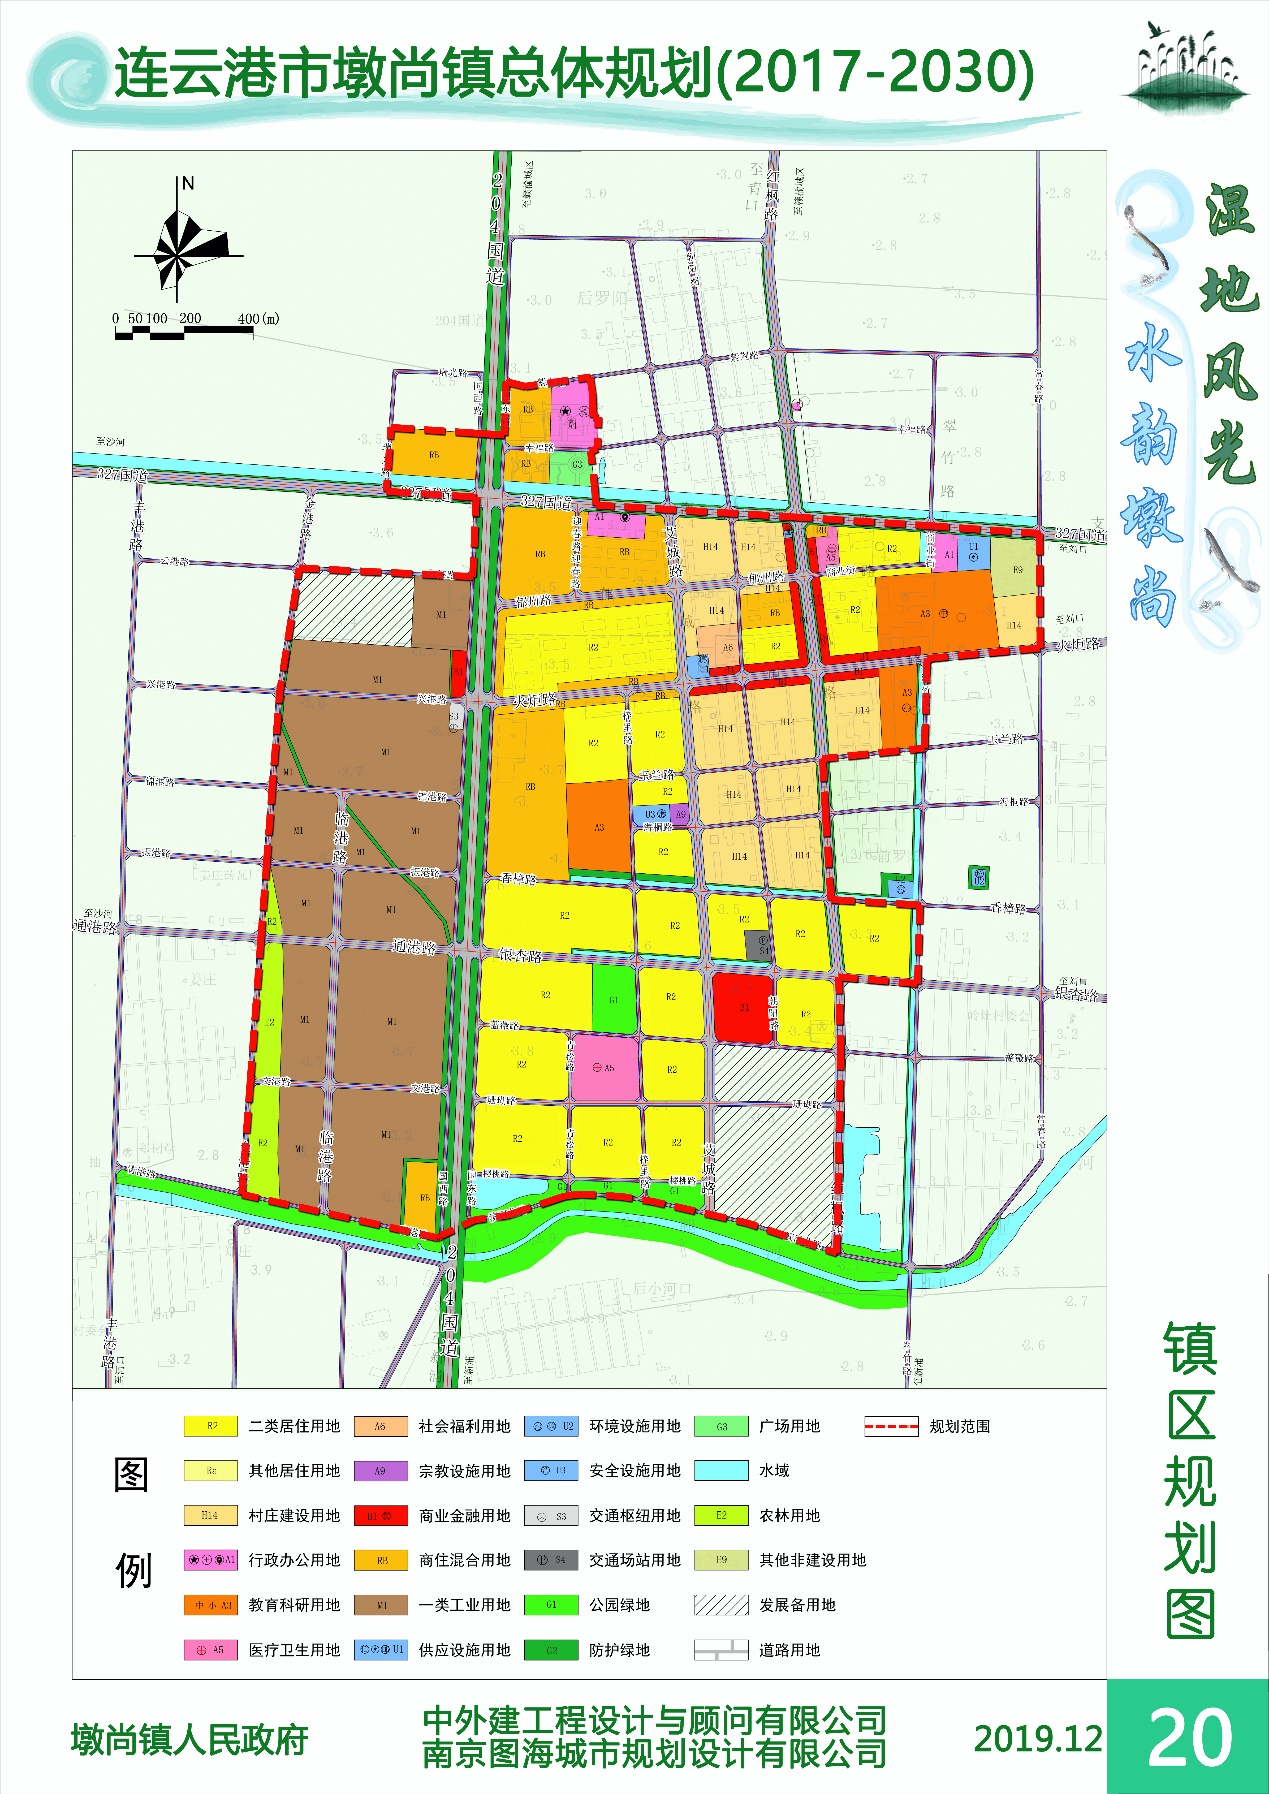 《连云港市赣榆区墩尚镇总体规划(2017-2030)》 较大修改公示材料